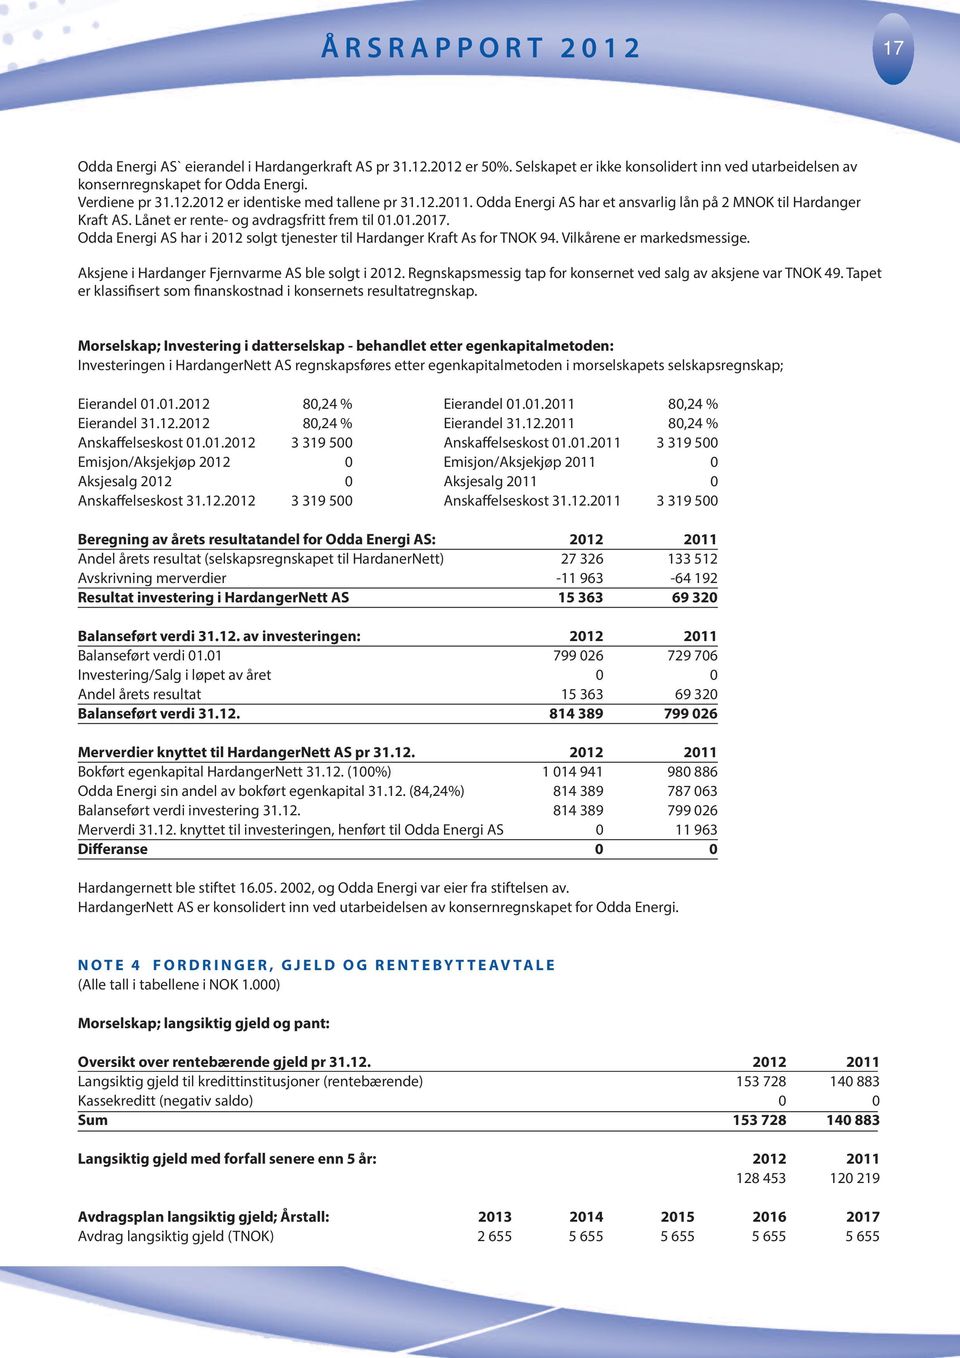 Odda Energi AS har i 212 solgt tjenester til Hardanger Kraft As for TNOK 94. Vilkårene er markedsmessige. Aksjene i Hardanger Fjernvarme AS ble solgt i 212.